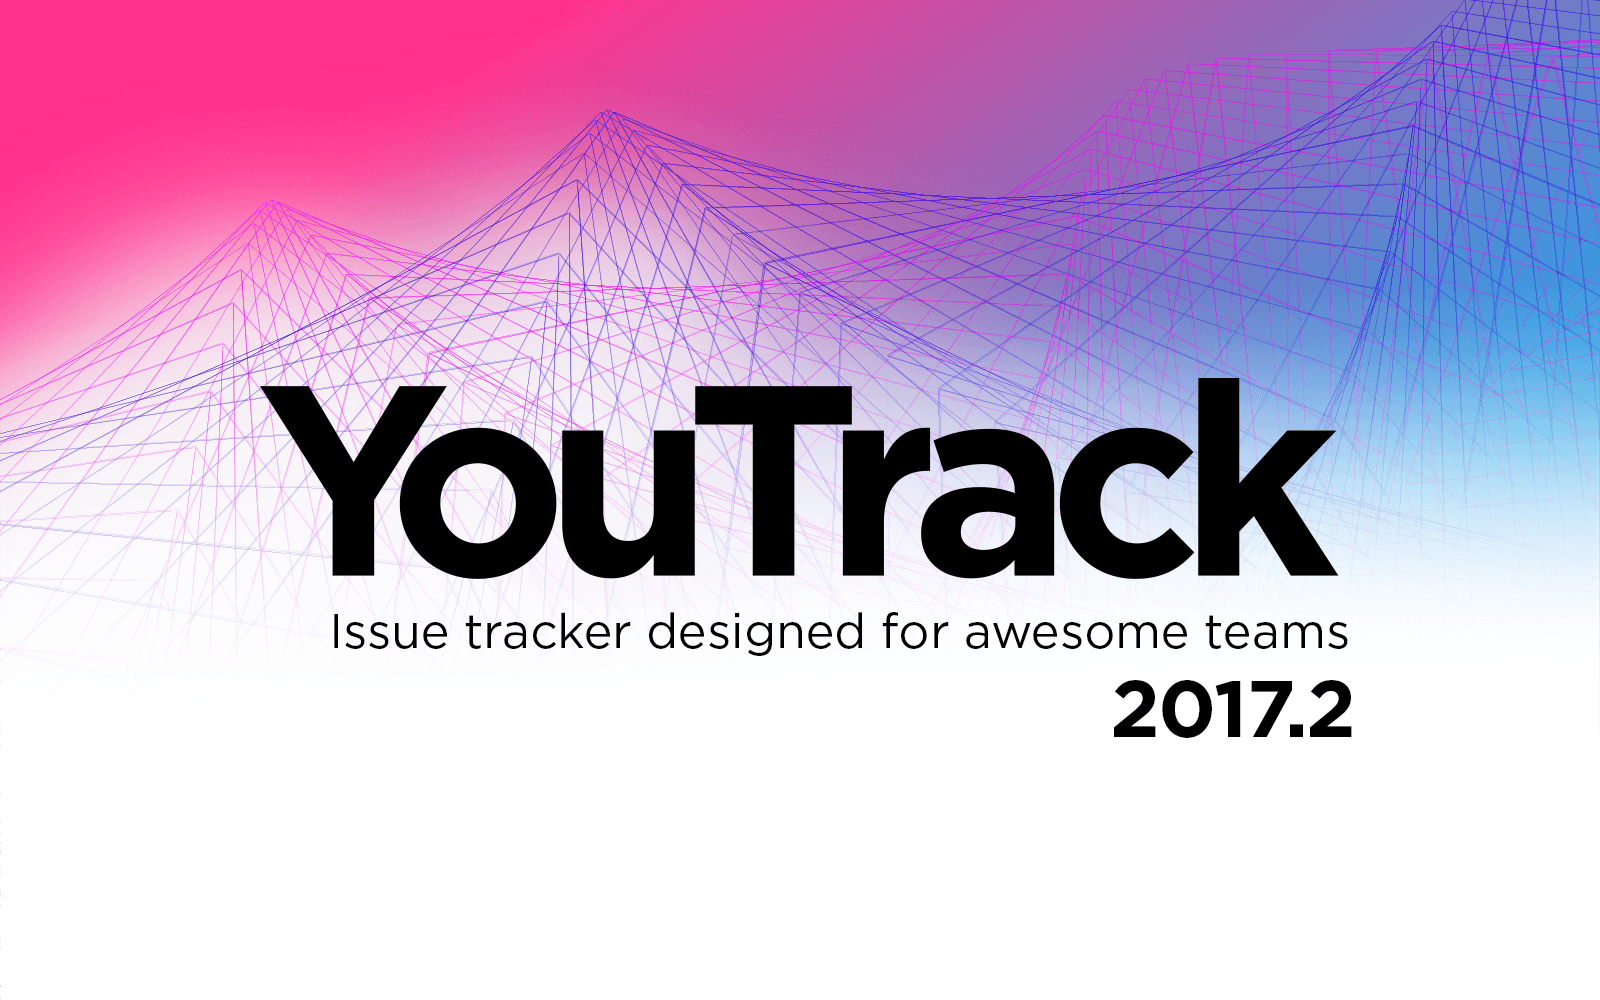 Релиз YouTrack 2017.2: обновленный профиль пользователя, экспериментальная функциональность и многое другое - 1